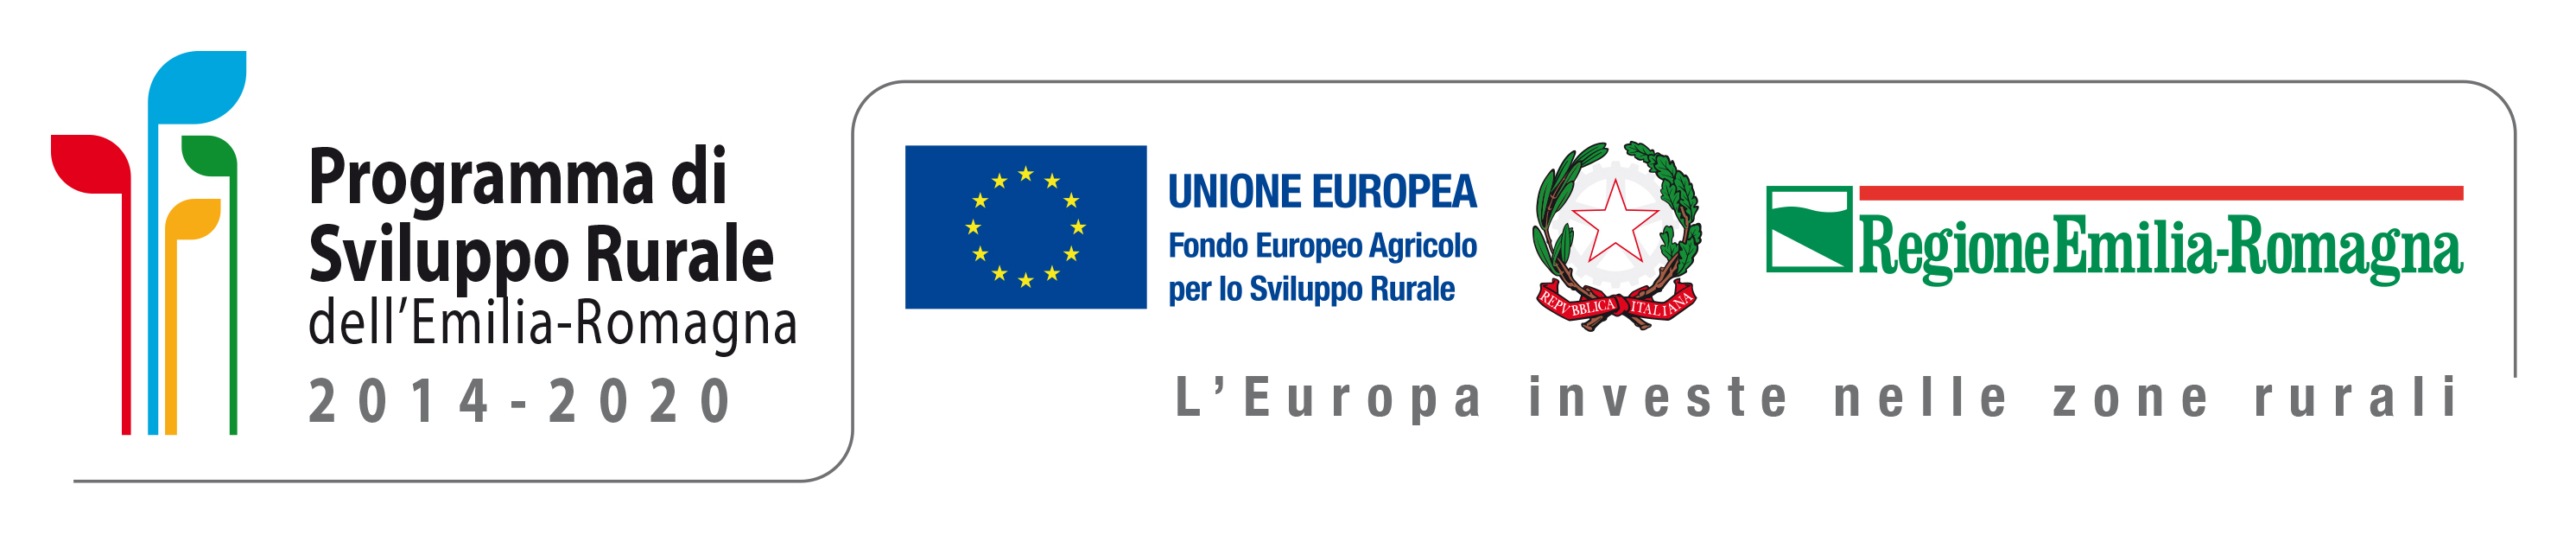 Fondo Europeo Agricolo per lo Sviluppo Rurale